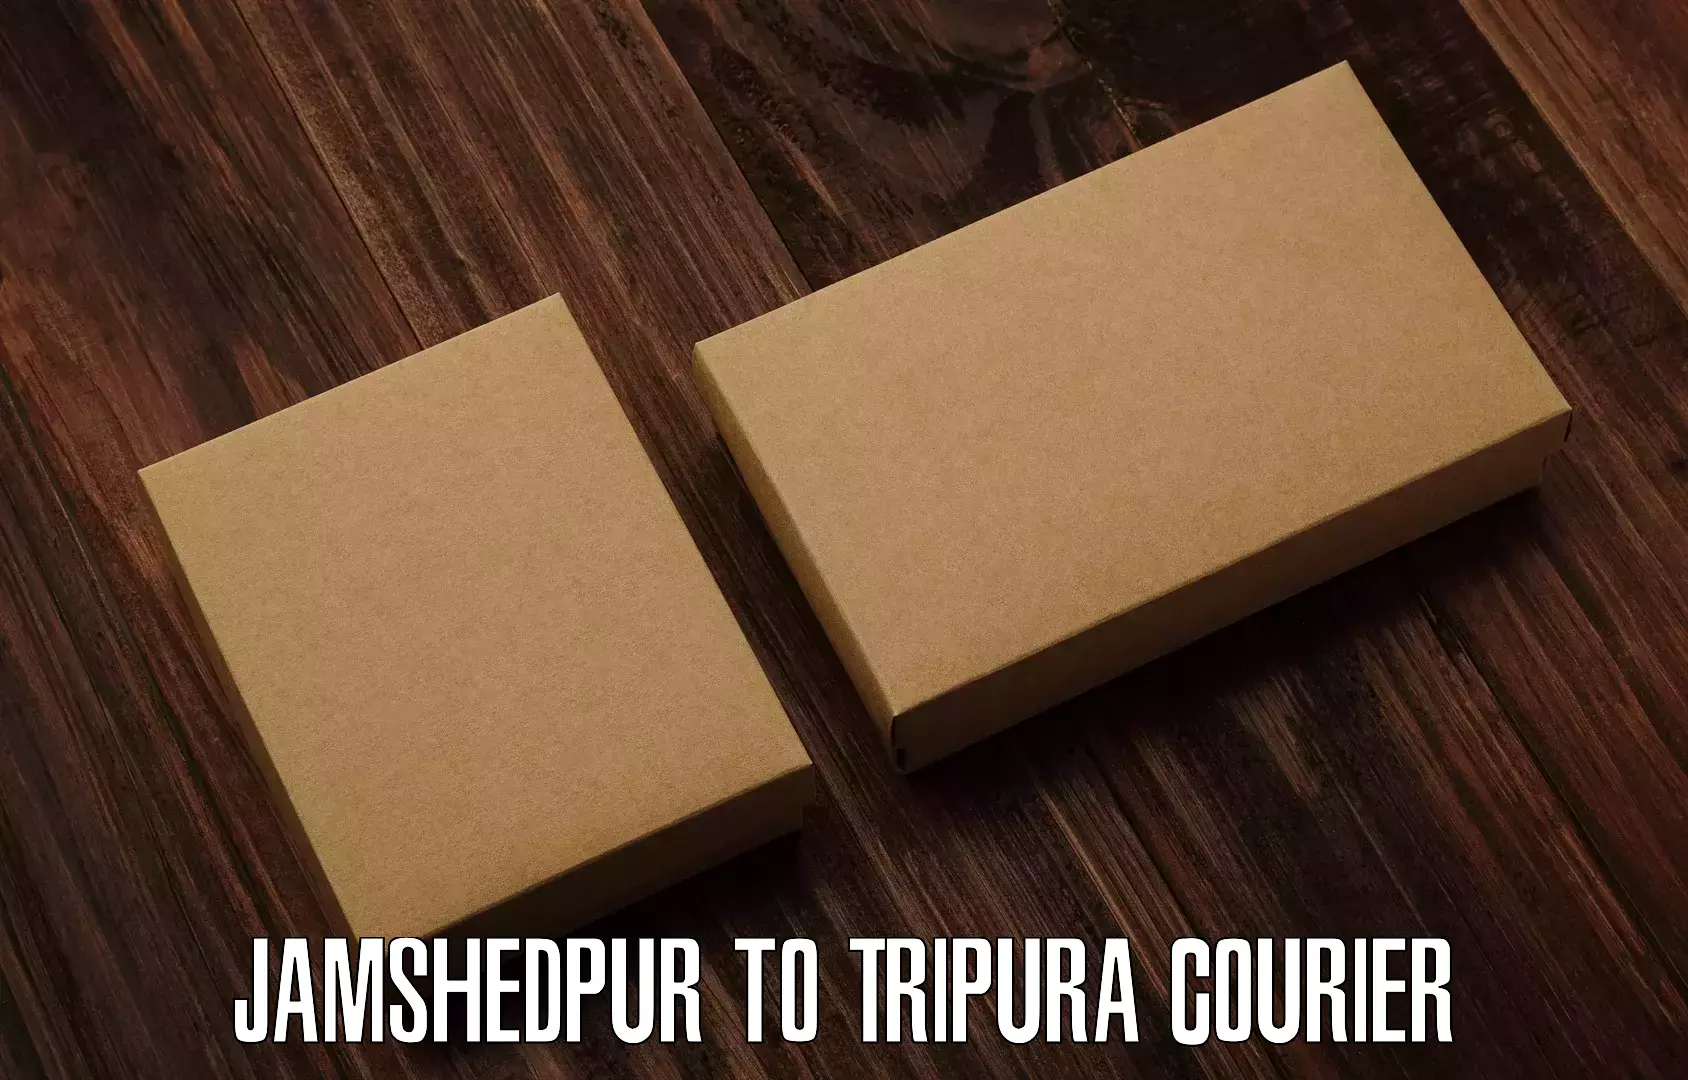 Nationwide parcel services Jamshedpur to Kamalpur